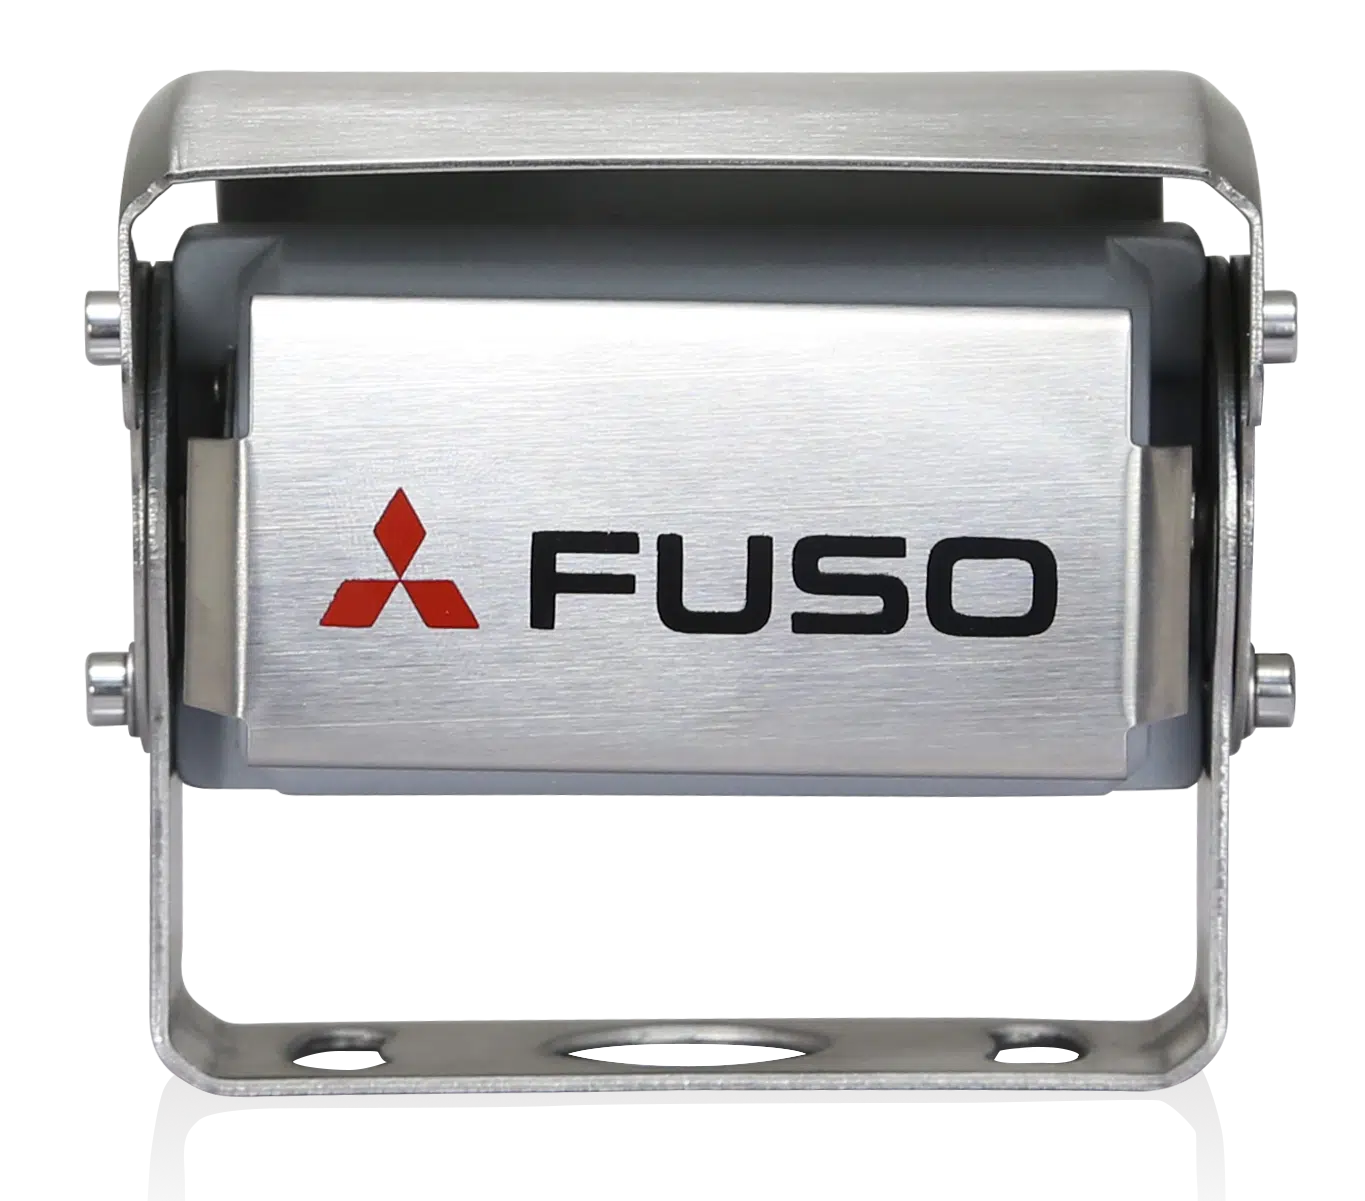 De achteruitrijcamera van FUSO is een krachtig product dat de voordelen van het beste zicht en maximale veiligheid combineert. Het heeft een geïntegreerde microfoon die zorgt voor een betere waarneming van het gebied achter het voertuig. Bij duisternis wordt de kleur van het display automatisch gewijzigd om de bestuurder optimaal zicht te bieden. Het systeem kan worden gebruikt met 12 en 24 V en voldoet aan de strengste FUSO-testvereisten. De camera is waterdicht tot IP69K. Het scherm heeft een resolutie van 800x480x3 (RGB).